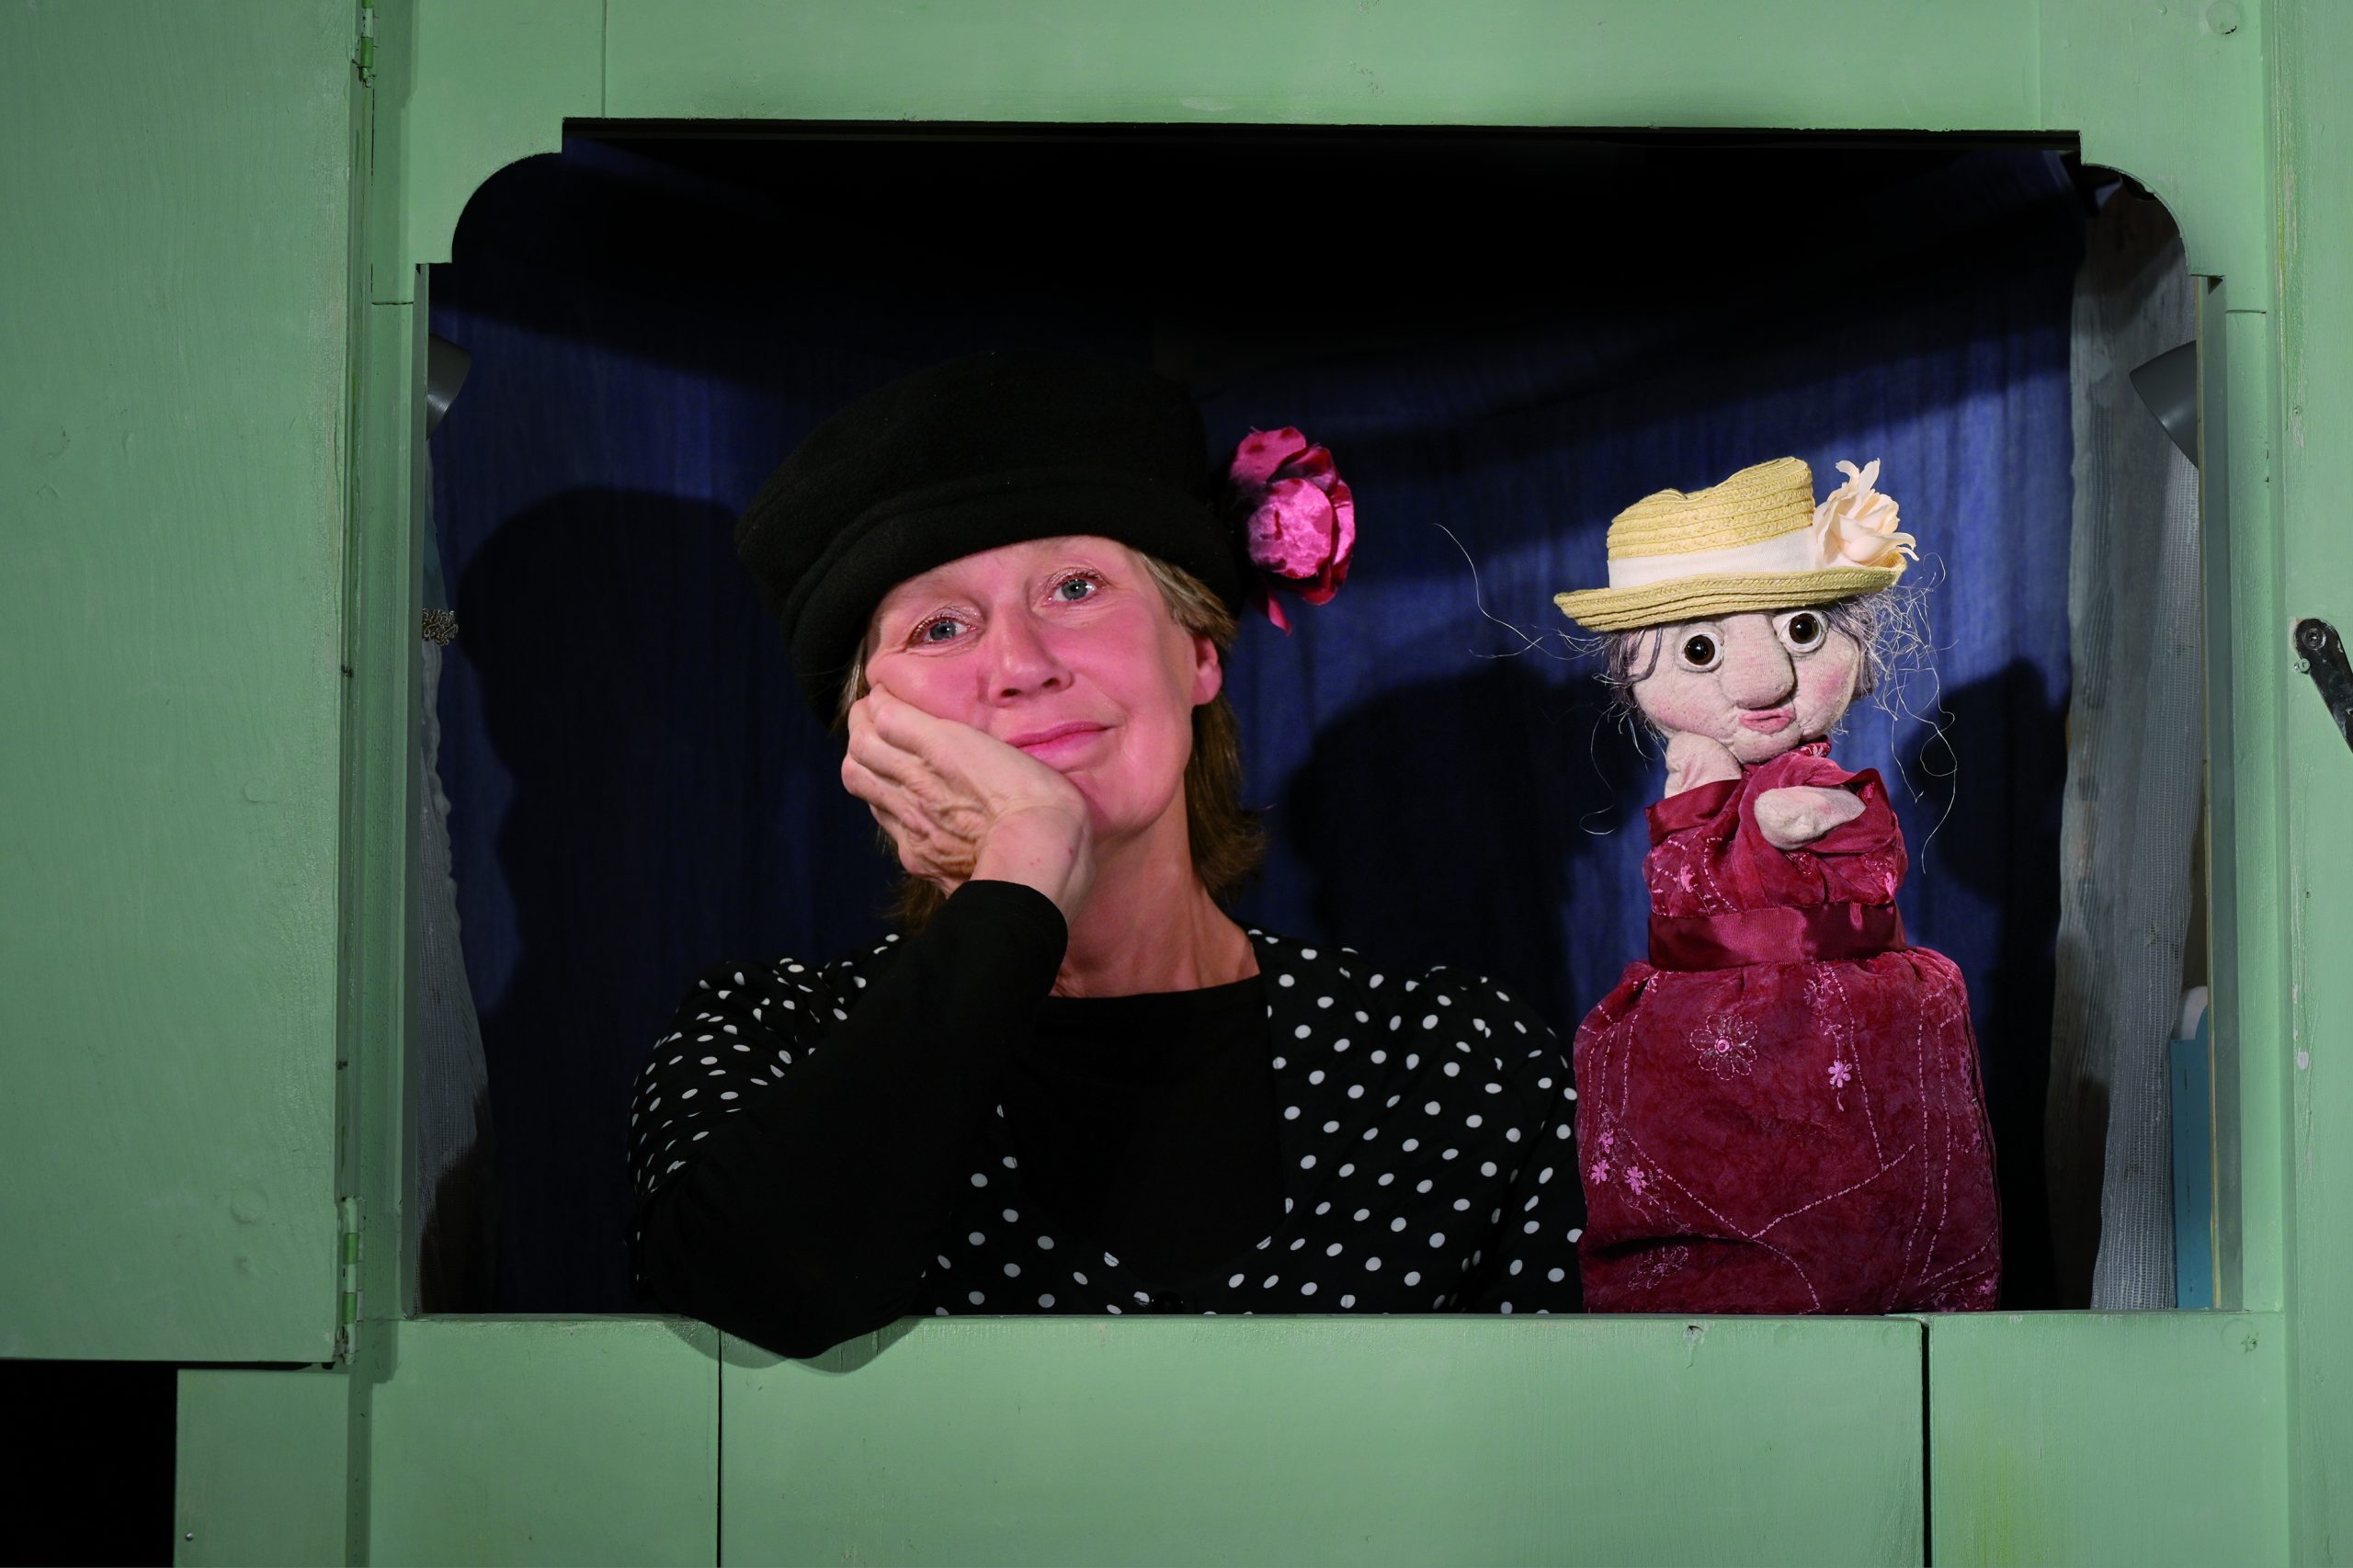 Foto: Puppenspiel “Meine Oma ist die Beste“”. Fotoautorin: Maren Winter